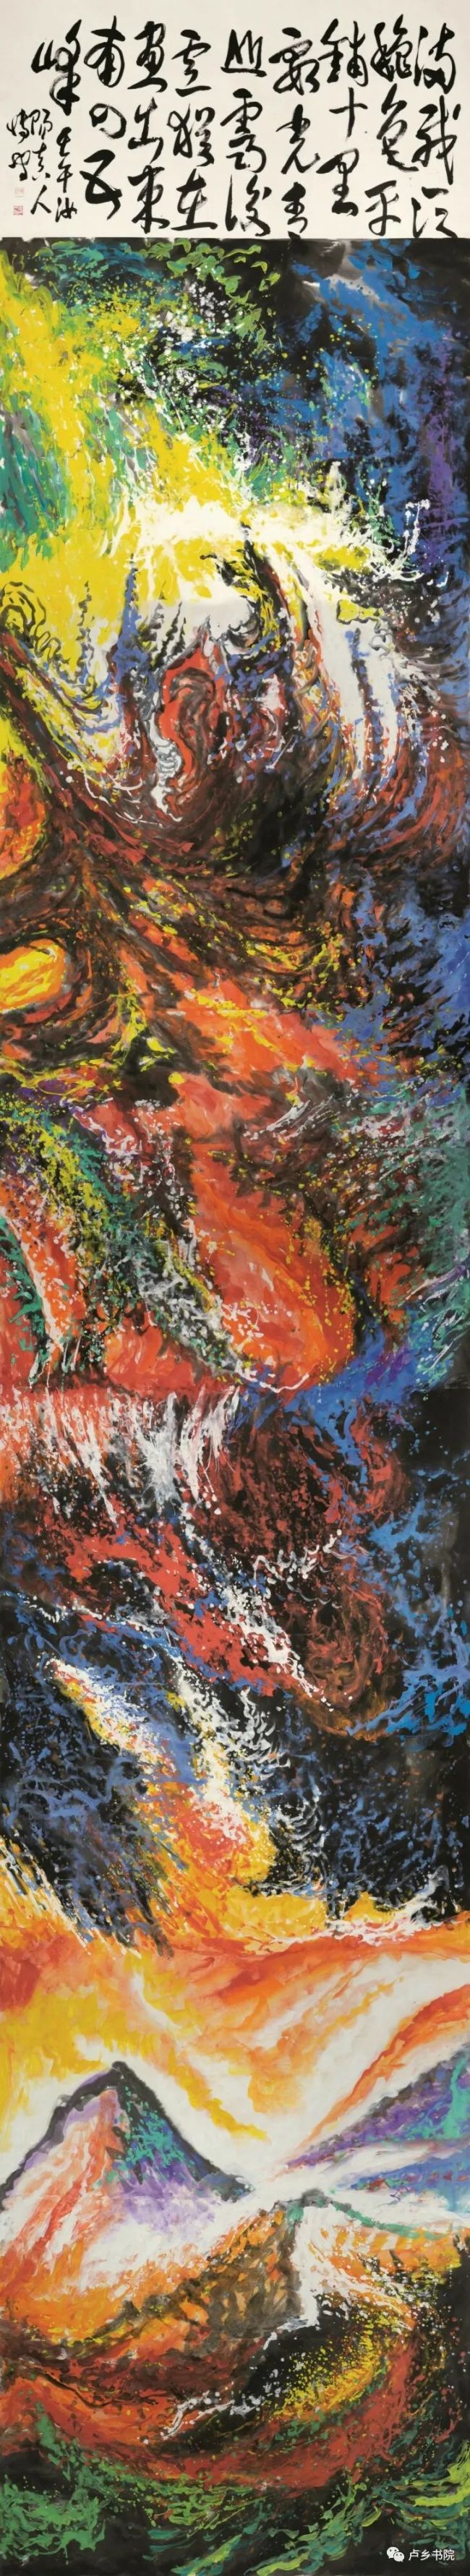 以丘壑和色彩成全笔墨——著名画家孙博文的生命异象